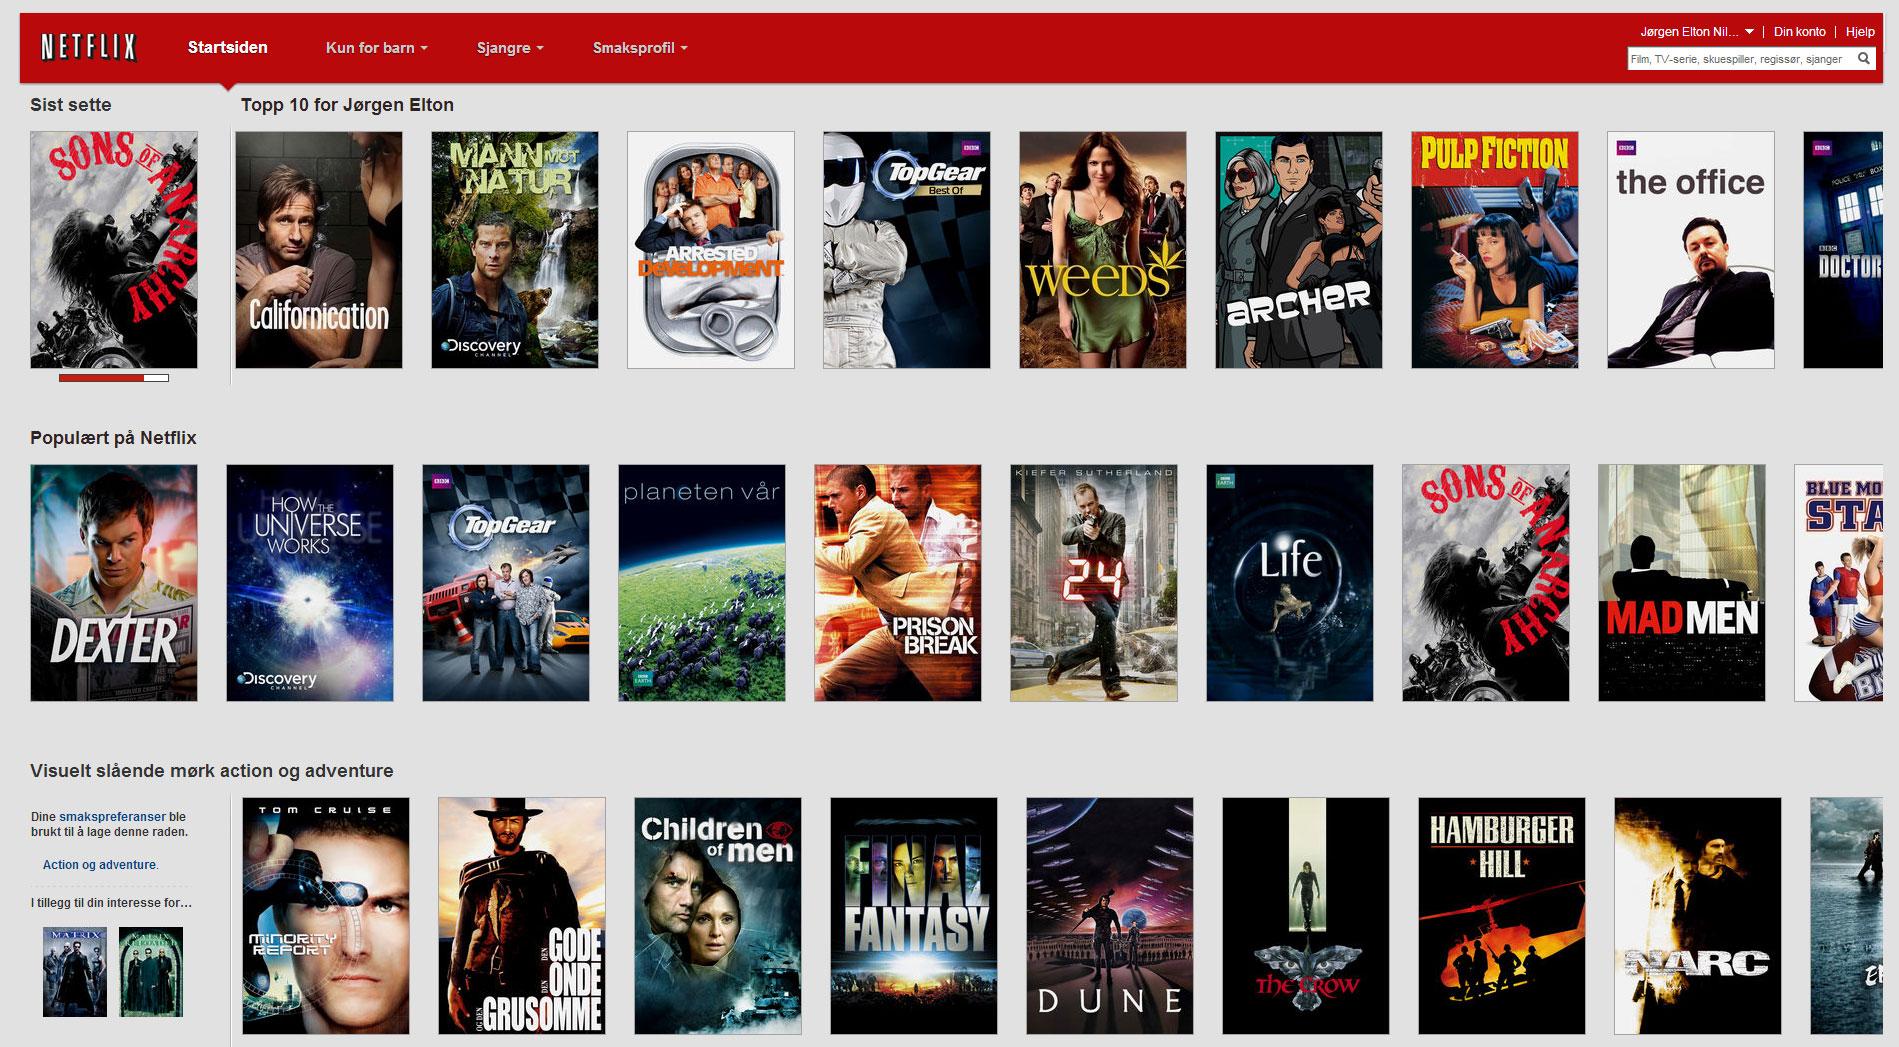 Netflix foreslår filmer som kan passe deg.Foto: Netflix